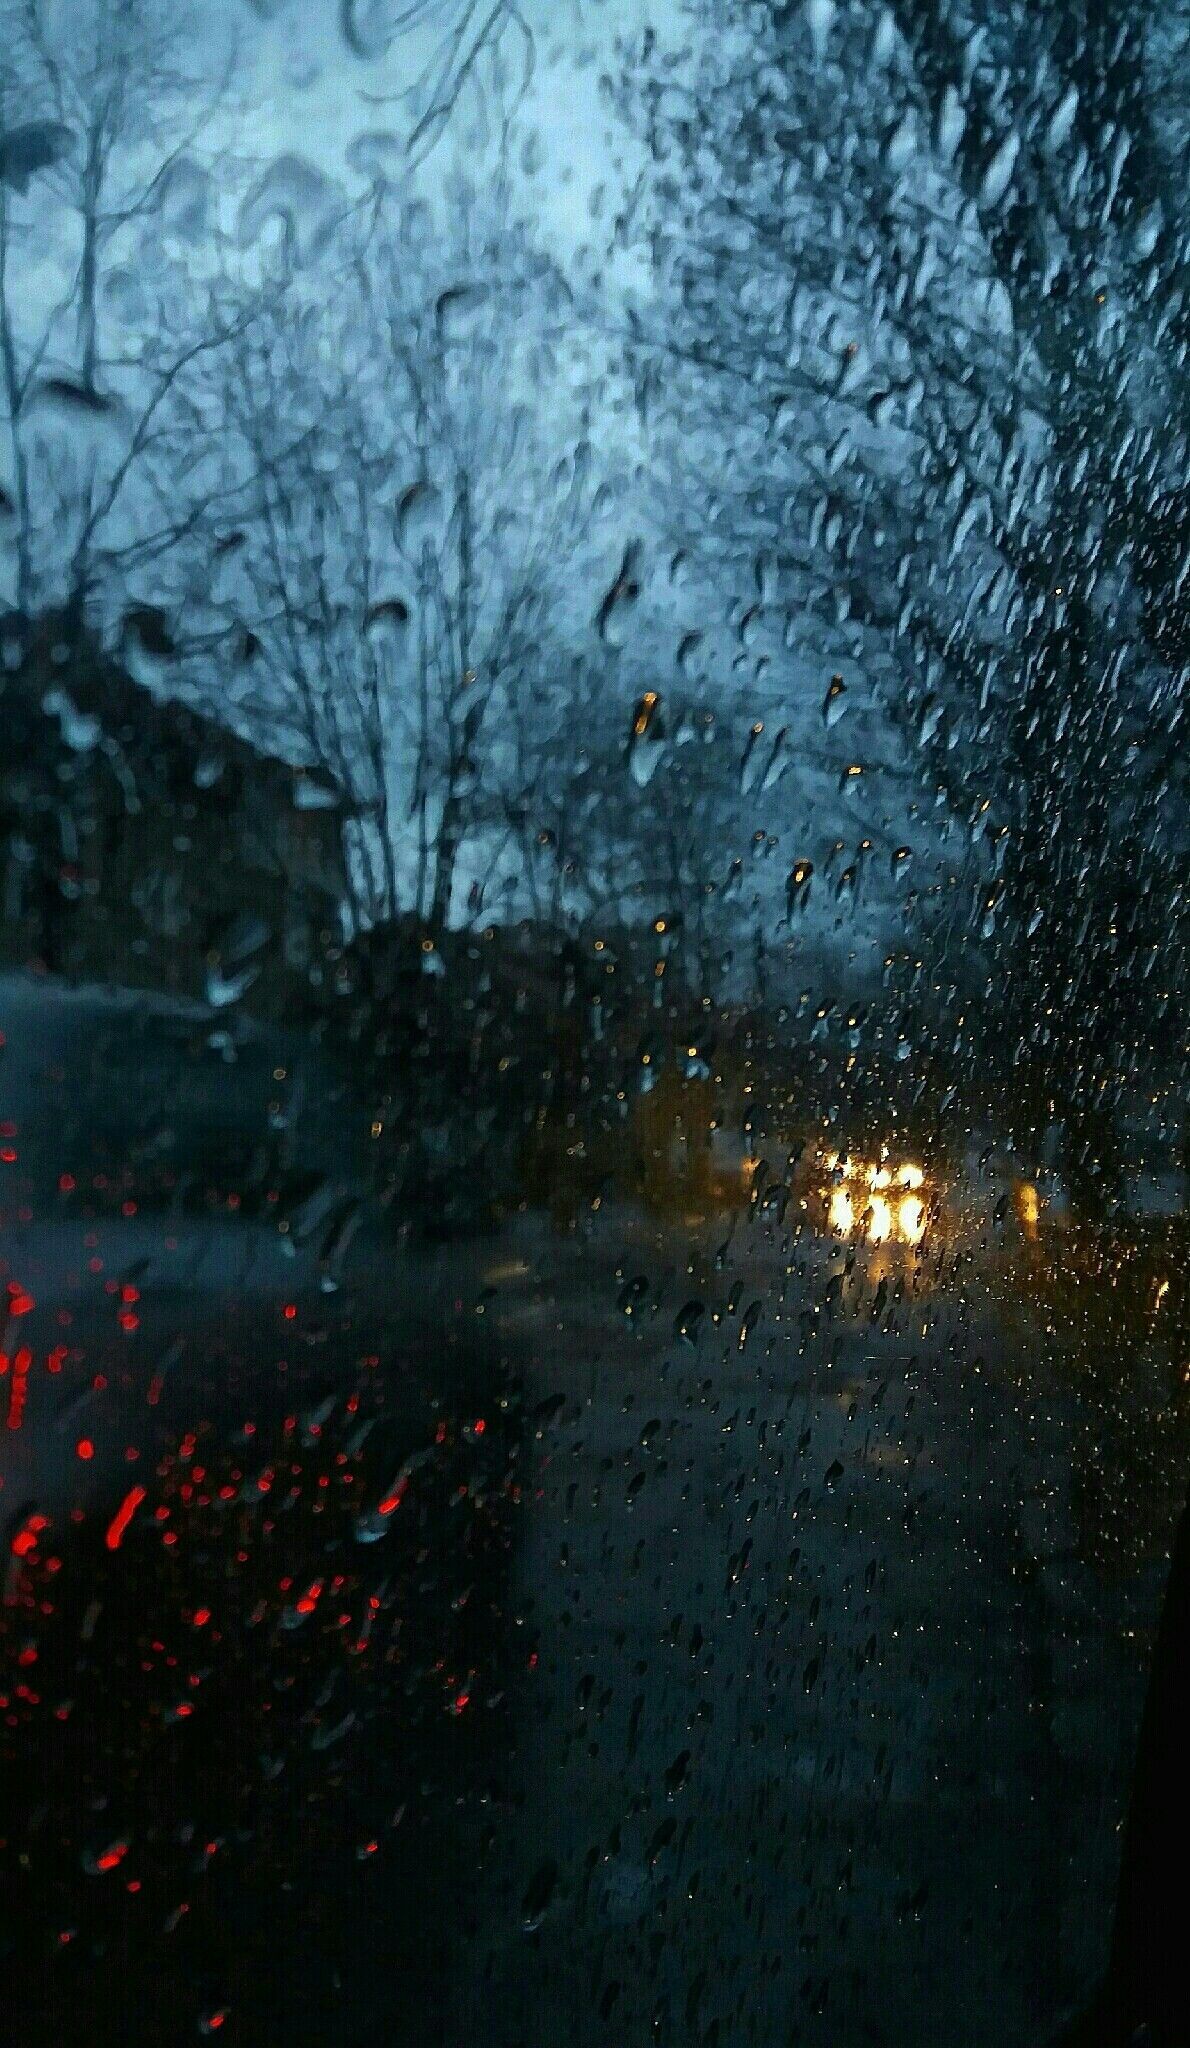 A car driving down the street in rain - Rain